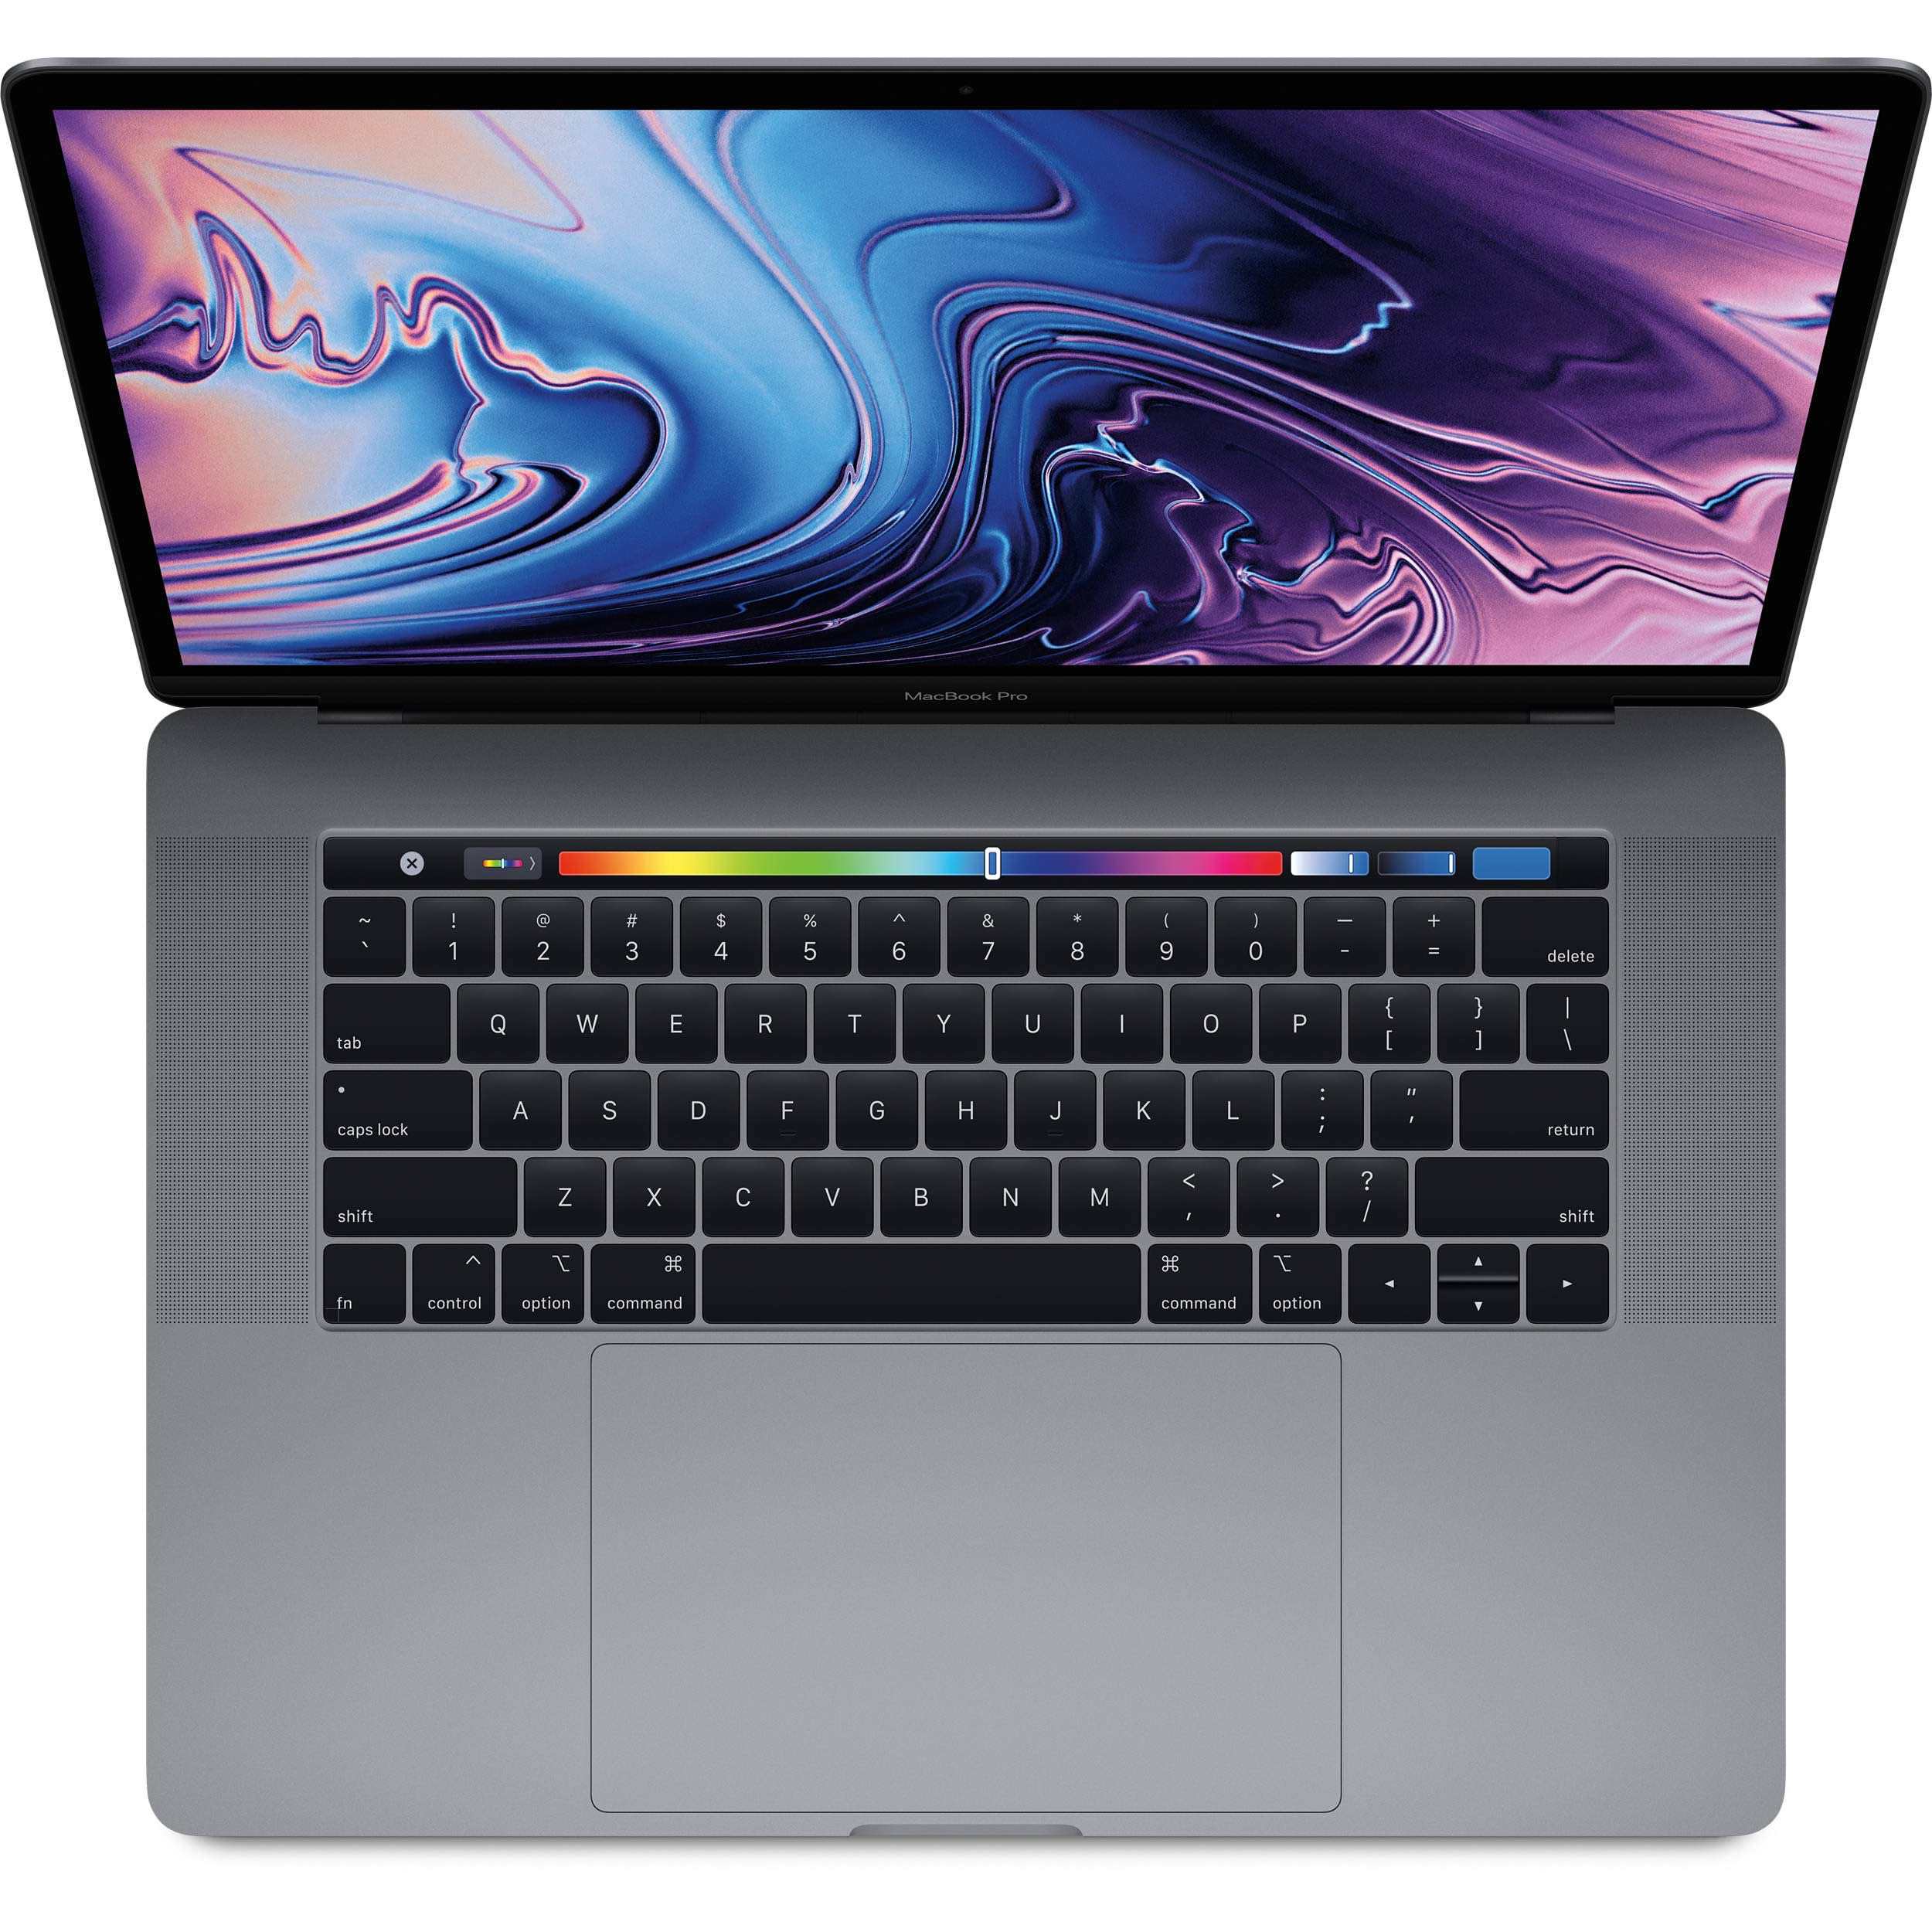 نقد و بررسی مک بوک پرو 2018 نسخه 15 اینچ - Apple MacBook Pro 2018